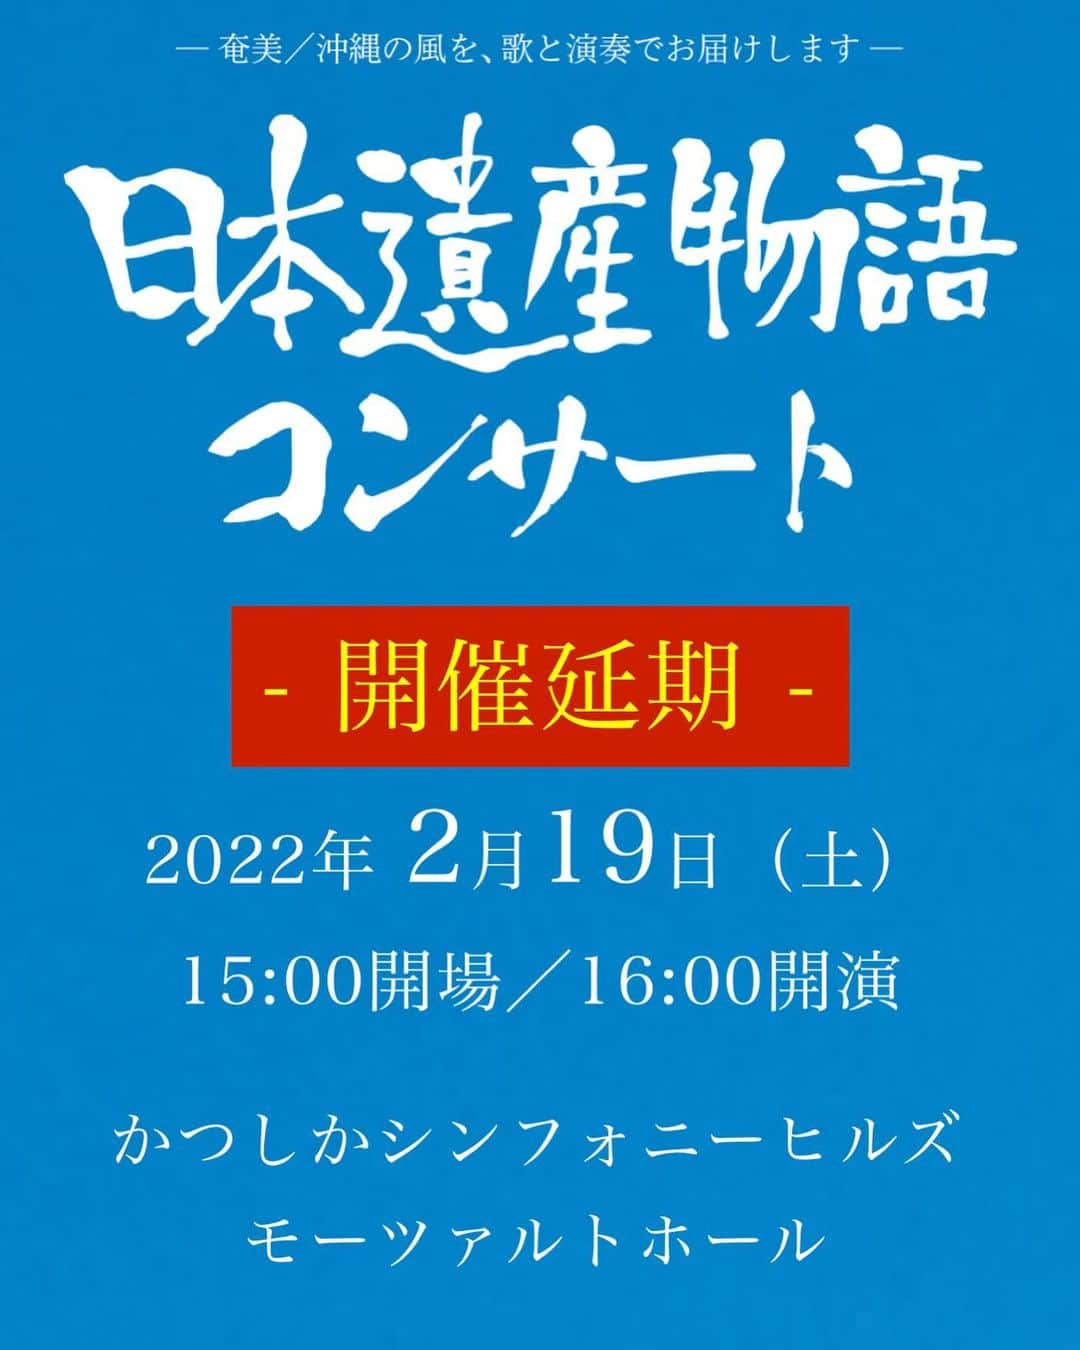 元ちとせのインスタグラム：「■『日本遺産物語コンサート 奄美大島編vol.3』公演延期のお知らせ😭です。  2022年2月19日（土）かつしかシンフォニーヒルズ・モーツァルトホールにて予定しておりました 『日本遺産物語コンサート』の開催につきまして、皆様に楽しんでいただける内容を準備しておりましたが、 関係者で協議を重ねた結果、新型コロナウイルス感染拡大の防止と、お客様および関係者の安全を考慮し開催延期の決定をさせて頂きました。 振替が可能な場合は、延期公演当日までお手持ちのチケットを失くさないようにご注意ください。 (お買い求め頂いたチケットはそのままご利用頂けます)   振替公演日時:2022年9月11日(日) 15:00 開場 / 16:00 開演 会場:かつしかシンフォニーヒルズ モーツァルトホール ※会場の変更はございません 出演者:元ちとせ/中孝介/城南海/ござ(Piano) ※出演者の変更はございません  尚、振替公演へのご来場が叶わないお客様には、チケットの払戻しをさせていただきます。 払戻期間:2022年2月19日（土）〜 2022年3月31日（木） ※プレイガイドによって払戻期間が異なる場合がございます。予めご了承ください。  払い戻し方法に関しては、後日公演公式ホームページにて発表いたします。 払い戻しに関しても現在お持ちのチケットが必要となりますので、大切に保管をお願い致します。 本イベントを楽しみにしていただいておりました皆様には、大変ご迷惑をおかけいたしますこと、深くお詫び申し上げます。  【日本遺産物語コンサート 奄美大島編vol.3 公式ホームページ】 https://www.bsfuji.tv/nc/ 【問い合わせ】 BSフジイベントお問い合わせ: event@bsfuji.co.jp」